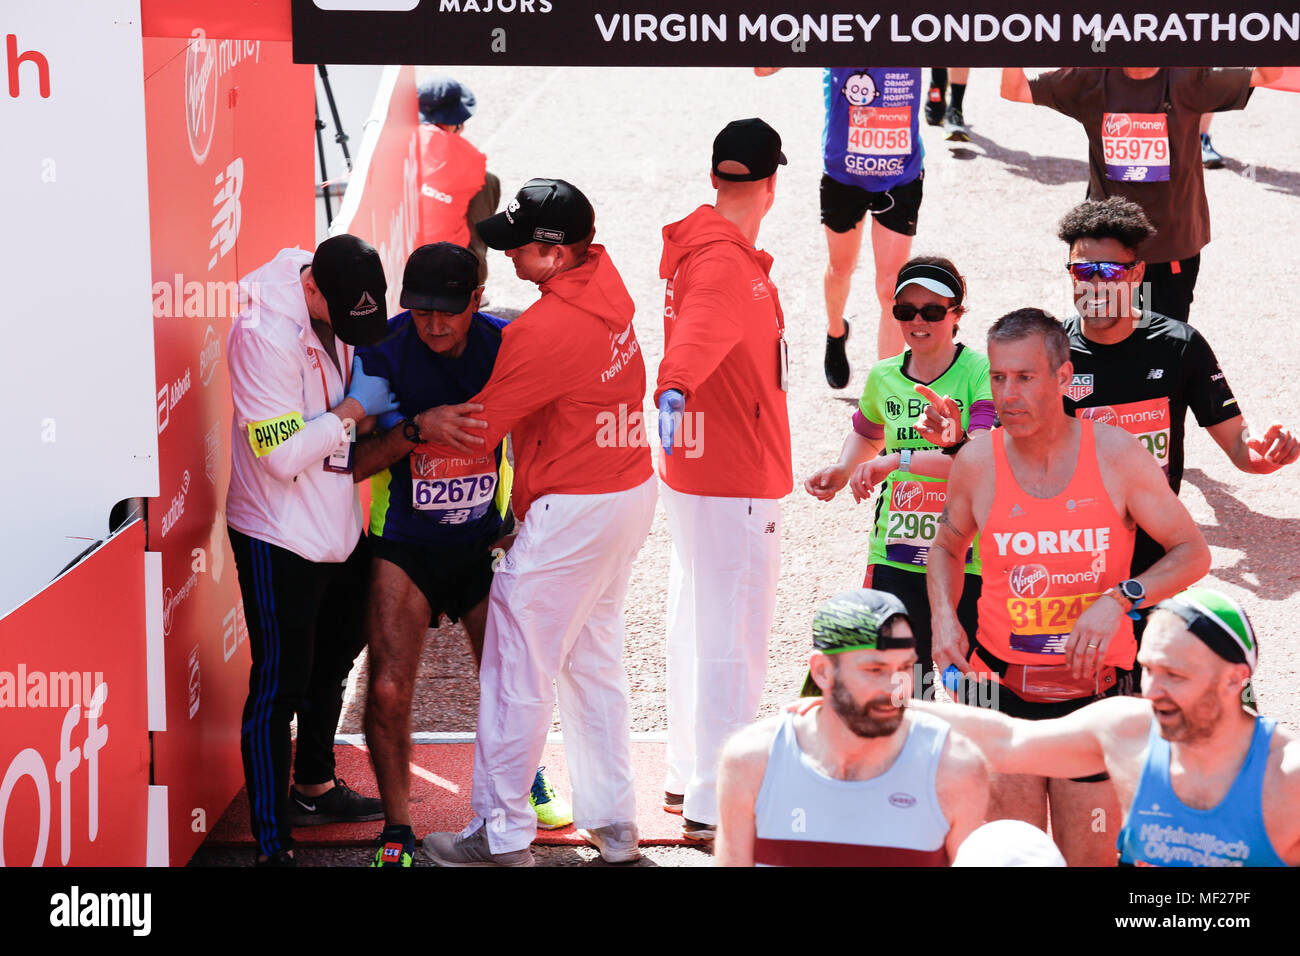 Läufer sind erschöpft, wie sie die Ziellinie in so weit die heißesten Virgin Money London Marathon in London, England am 22. April 2018. 41 tausend Menschen in der Marathon teilgenommen. Stockfoto